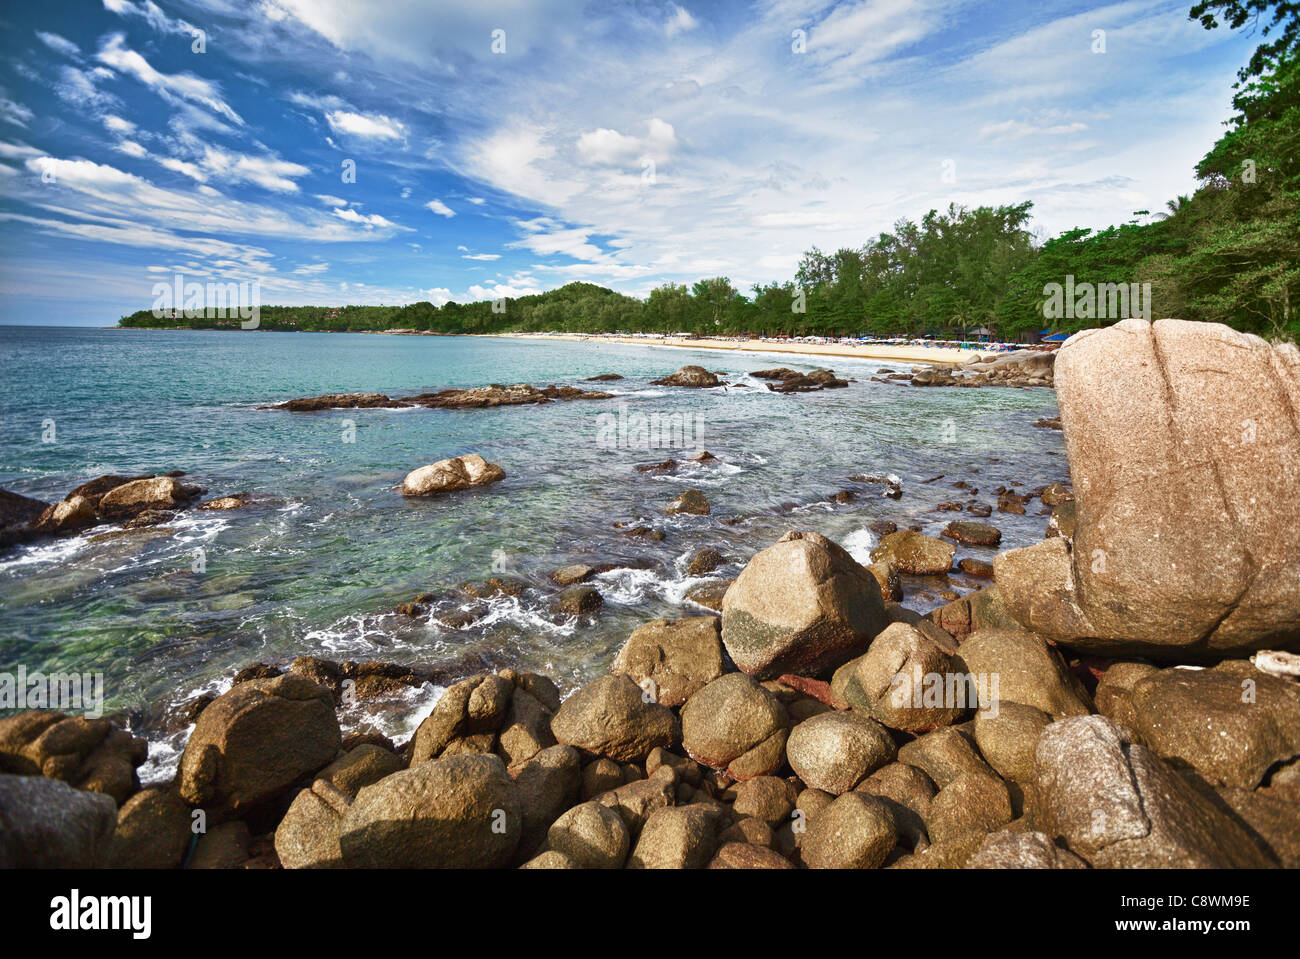 En mer avec une plage et des rochers - Thaïlande Banque D'Images